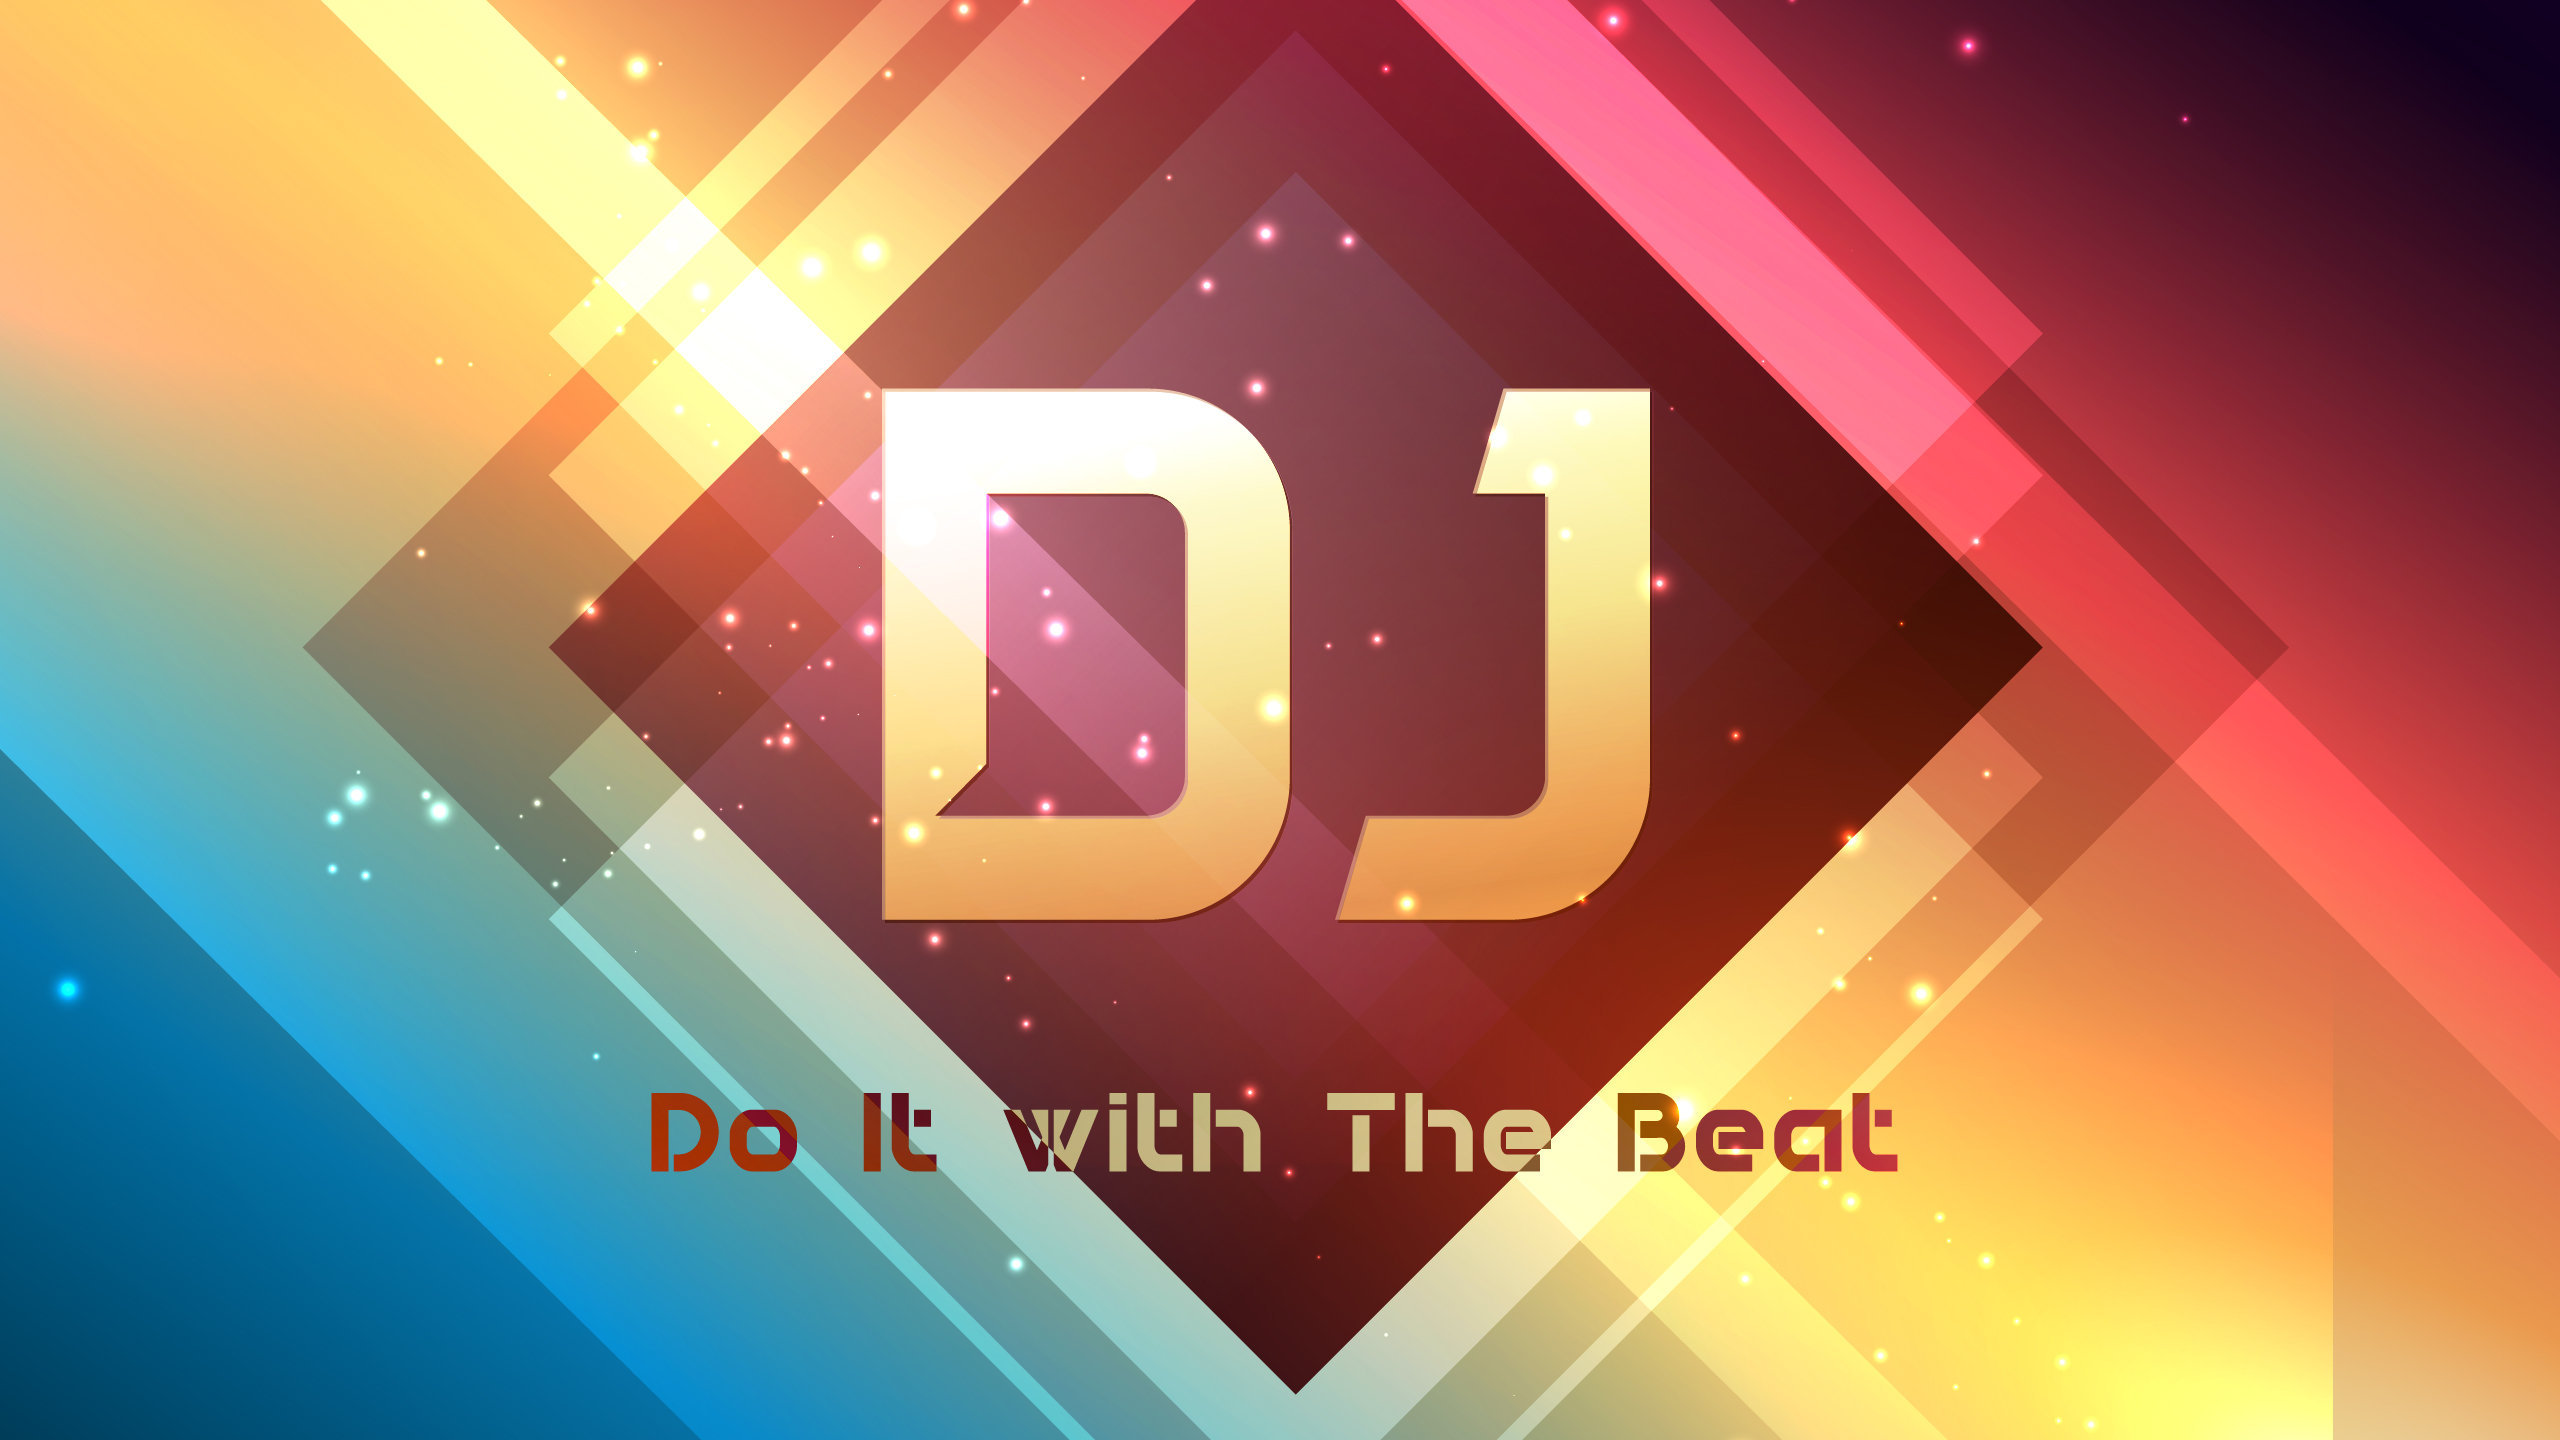 Dj Do It With The Beat Wallpaper - Dj Beat - HD Wallpaper 